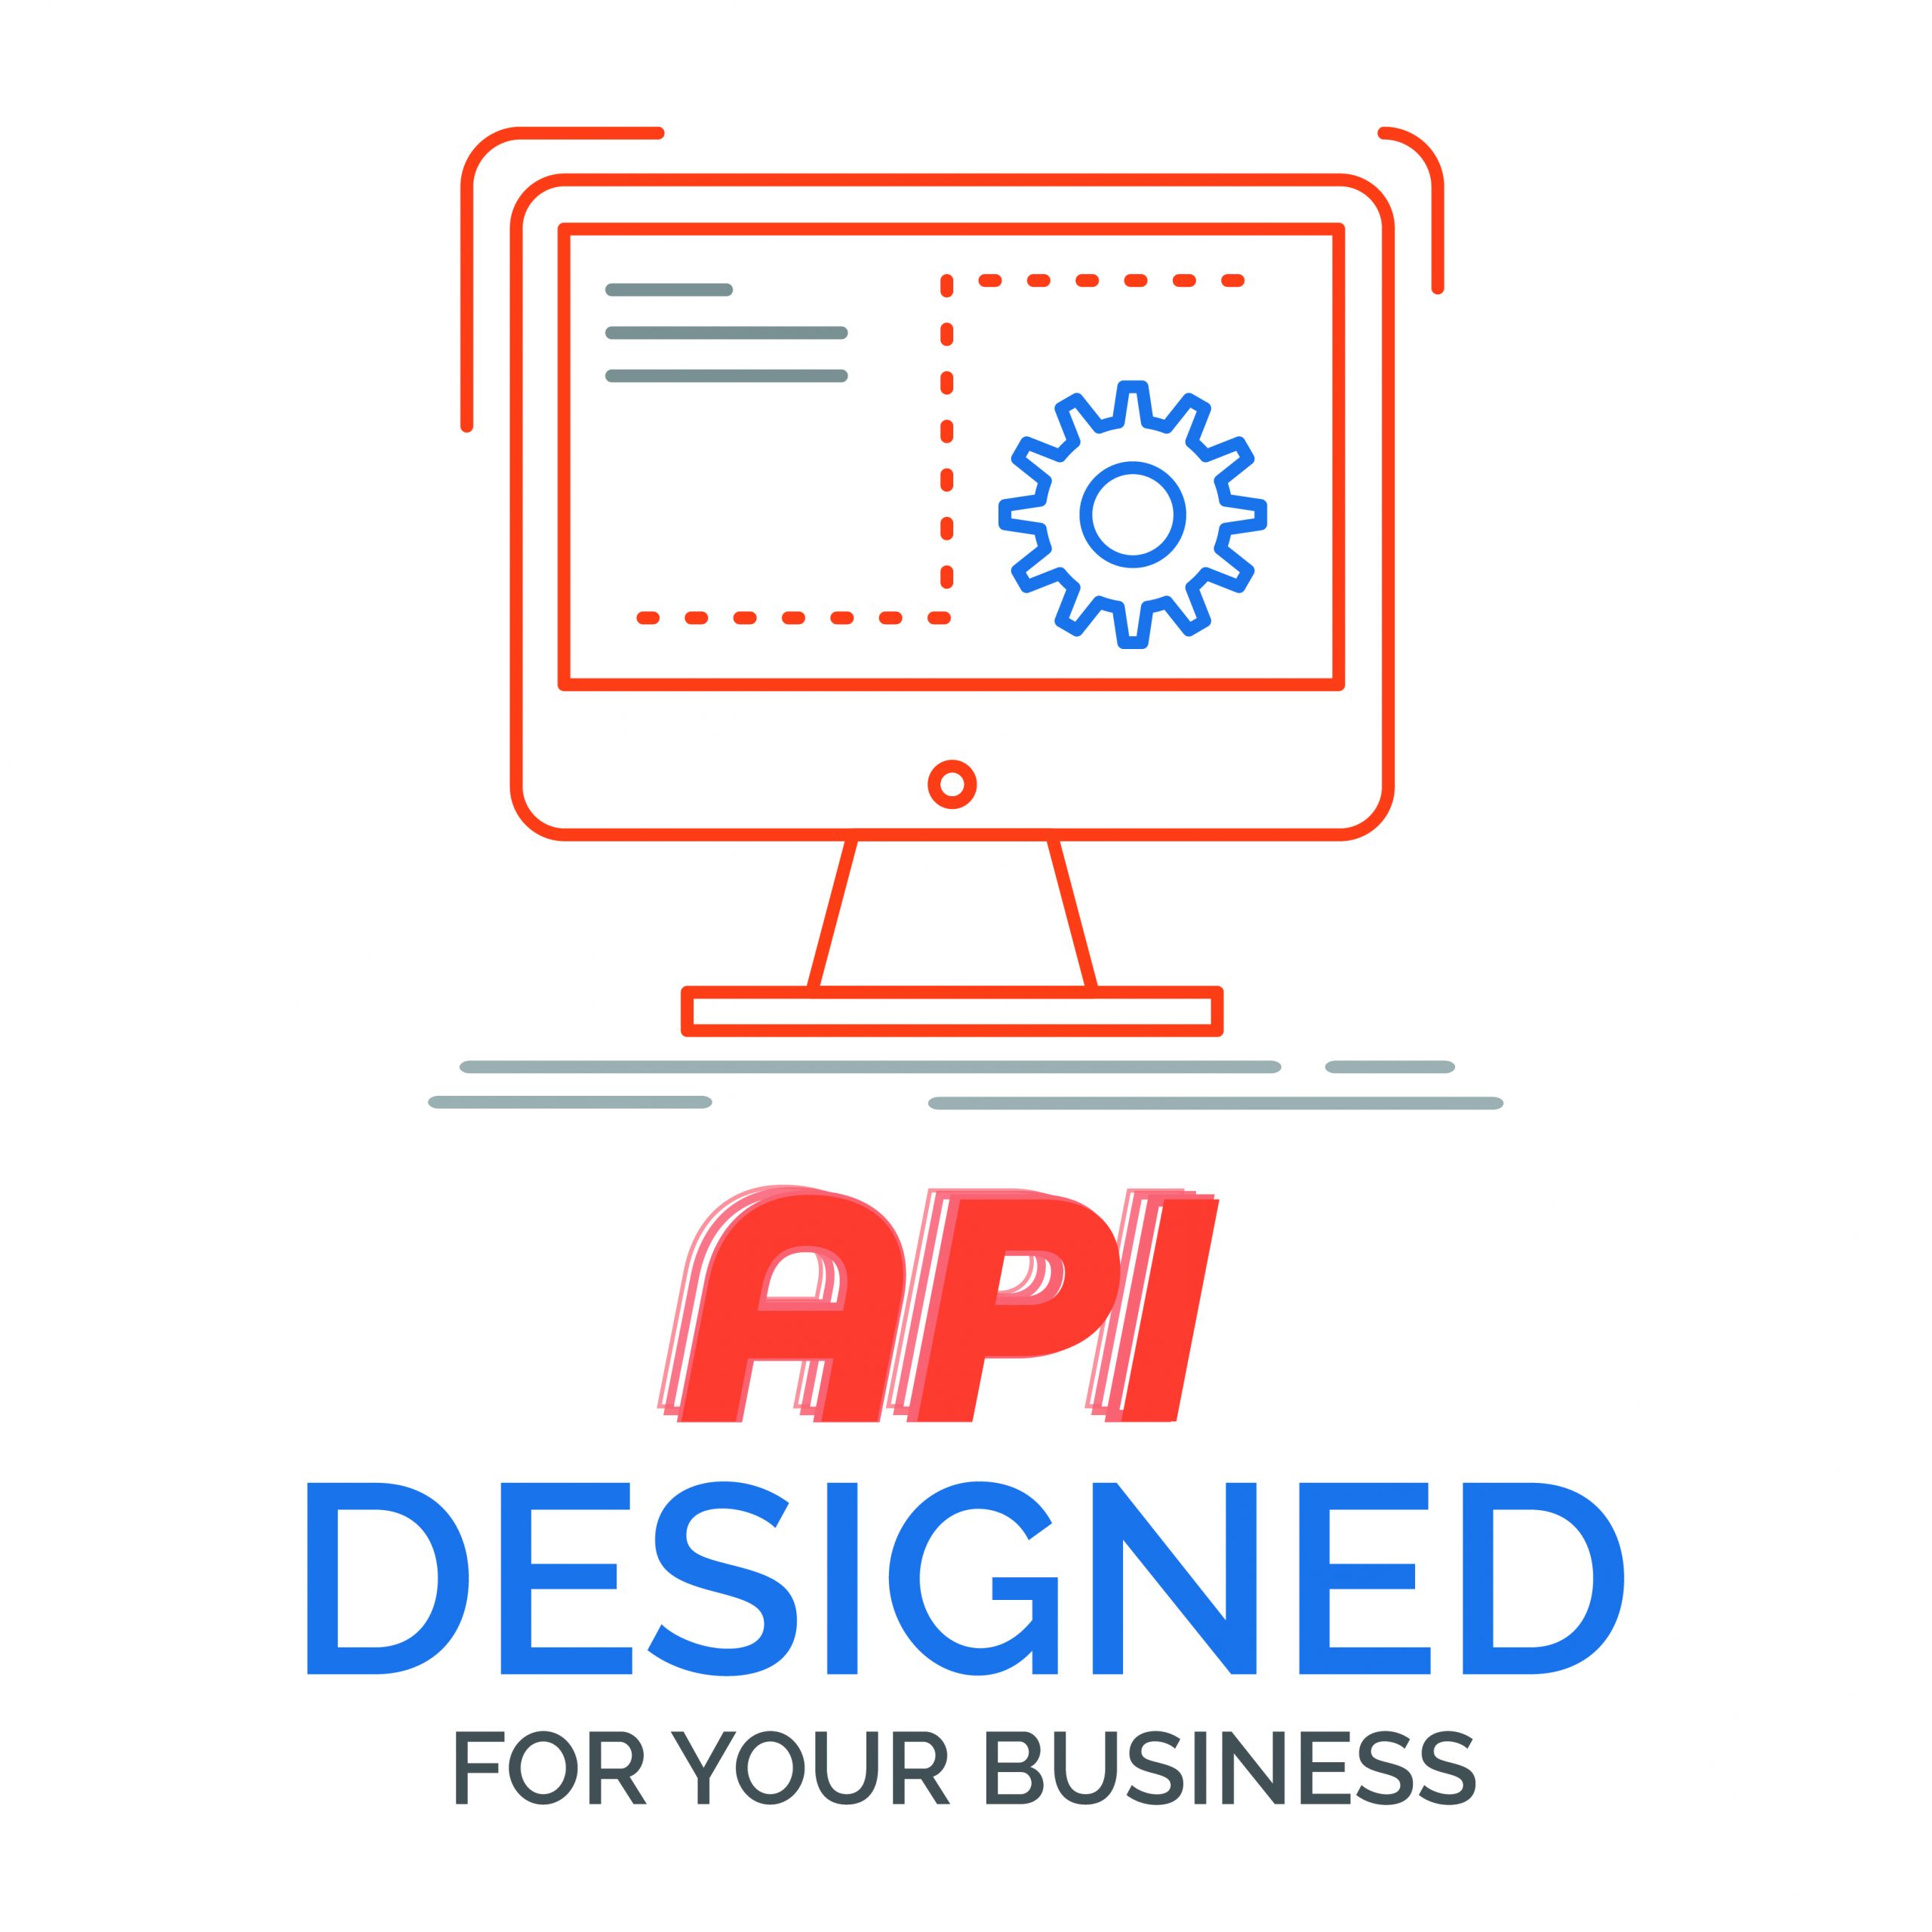 API DESIGNED FOR YOUR BUSINESS